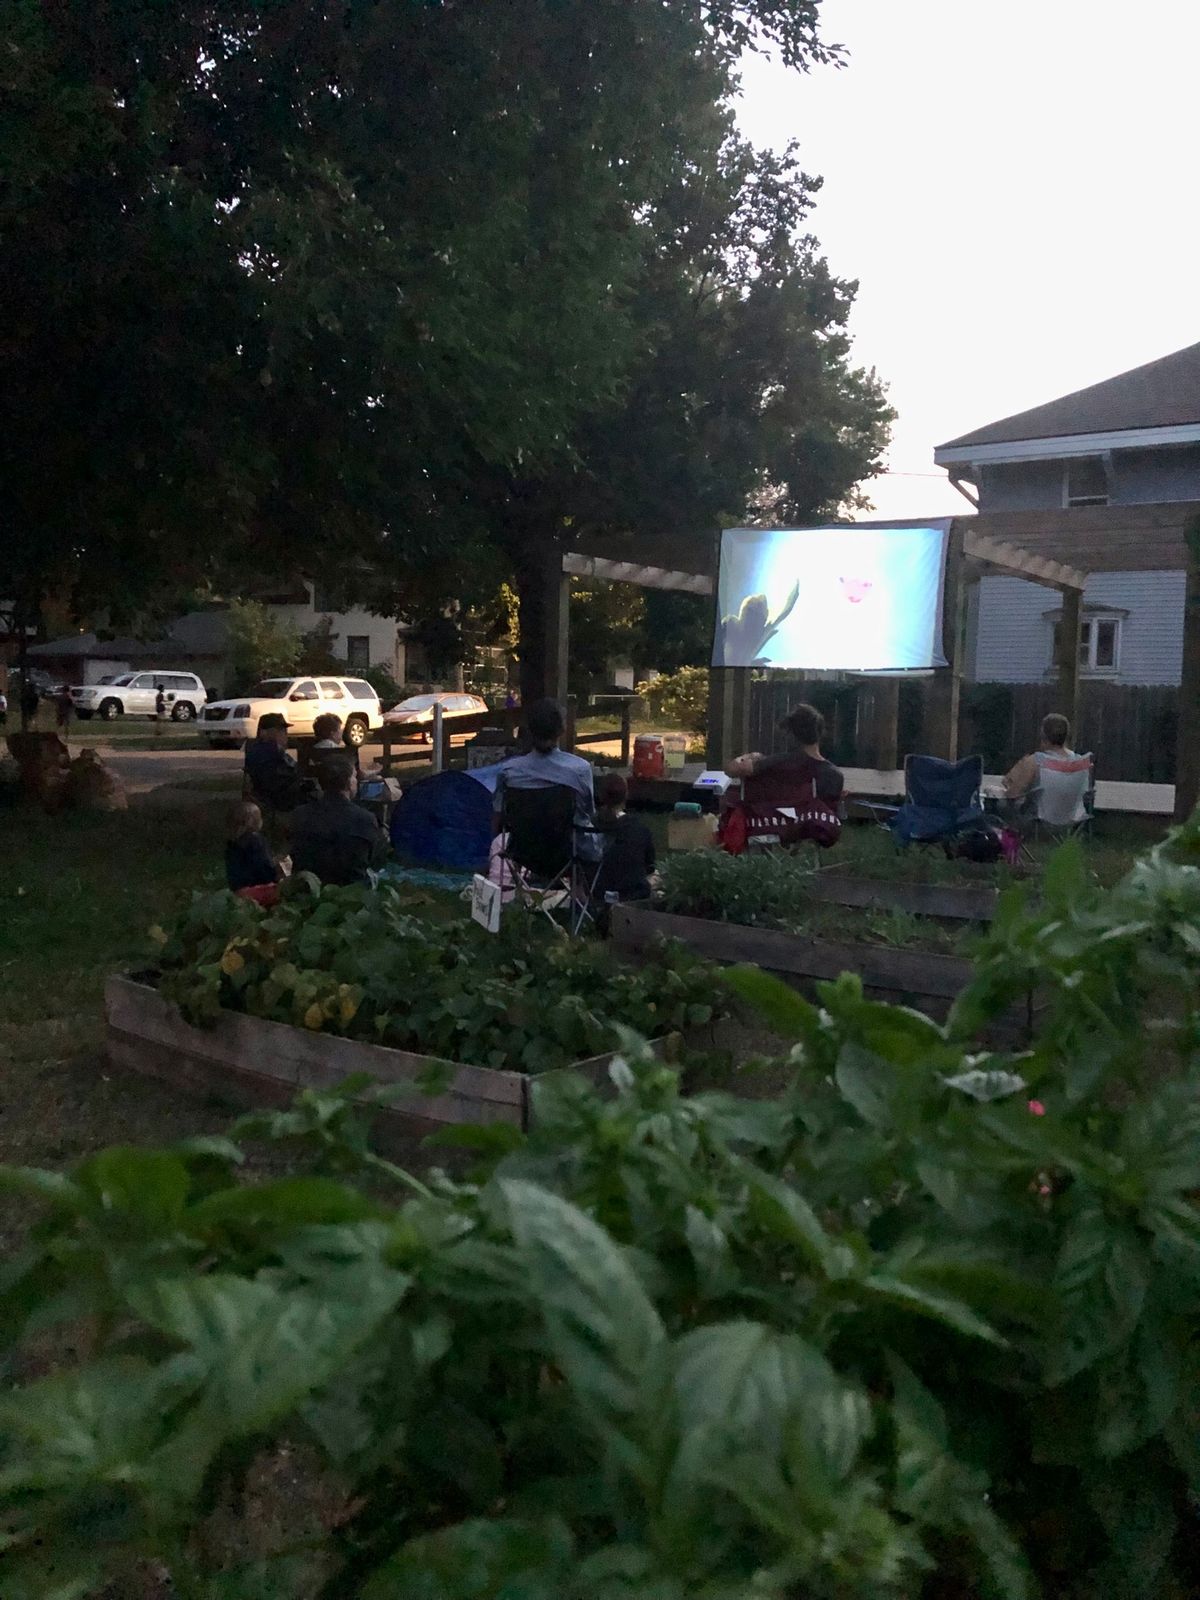 Movie Night in the Garden